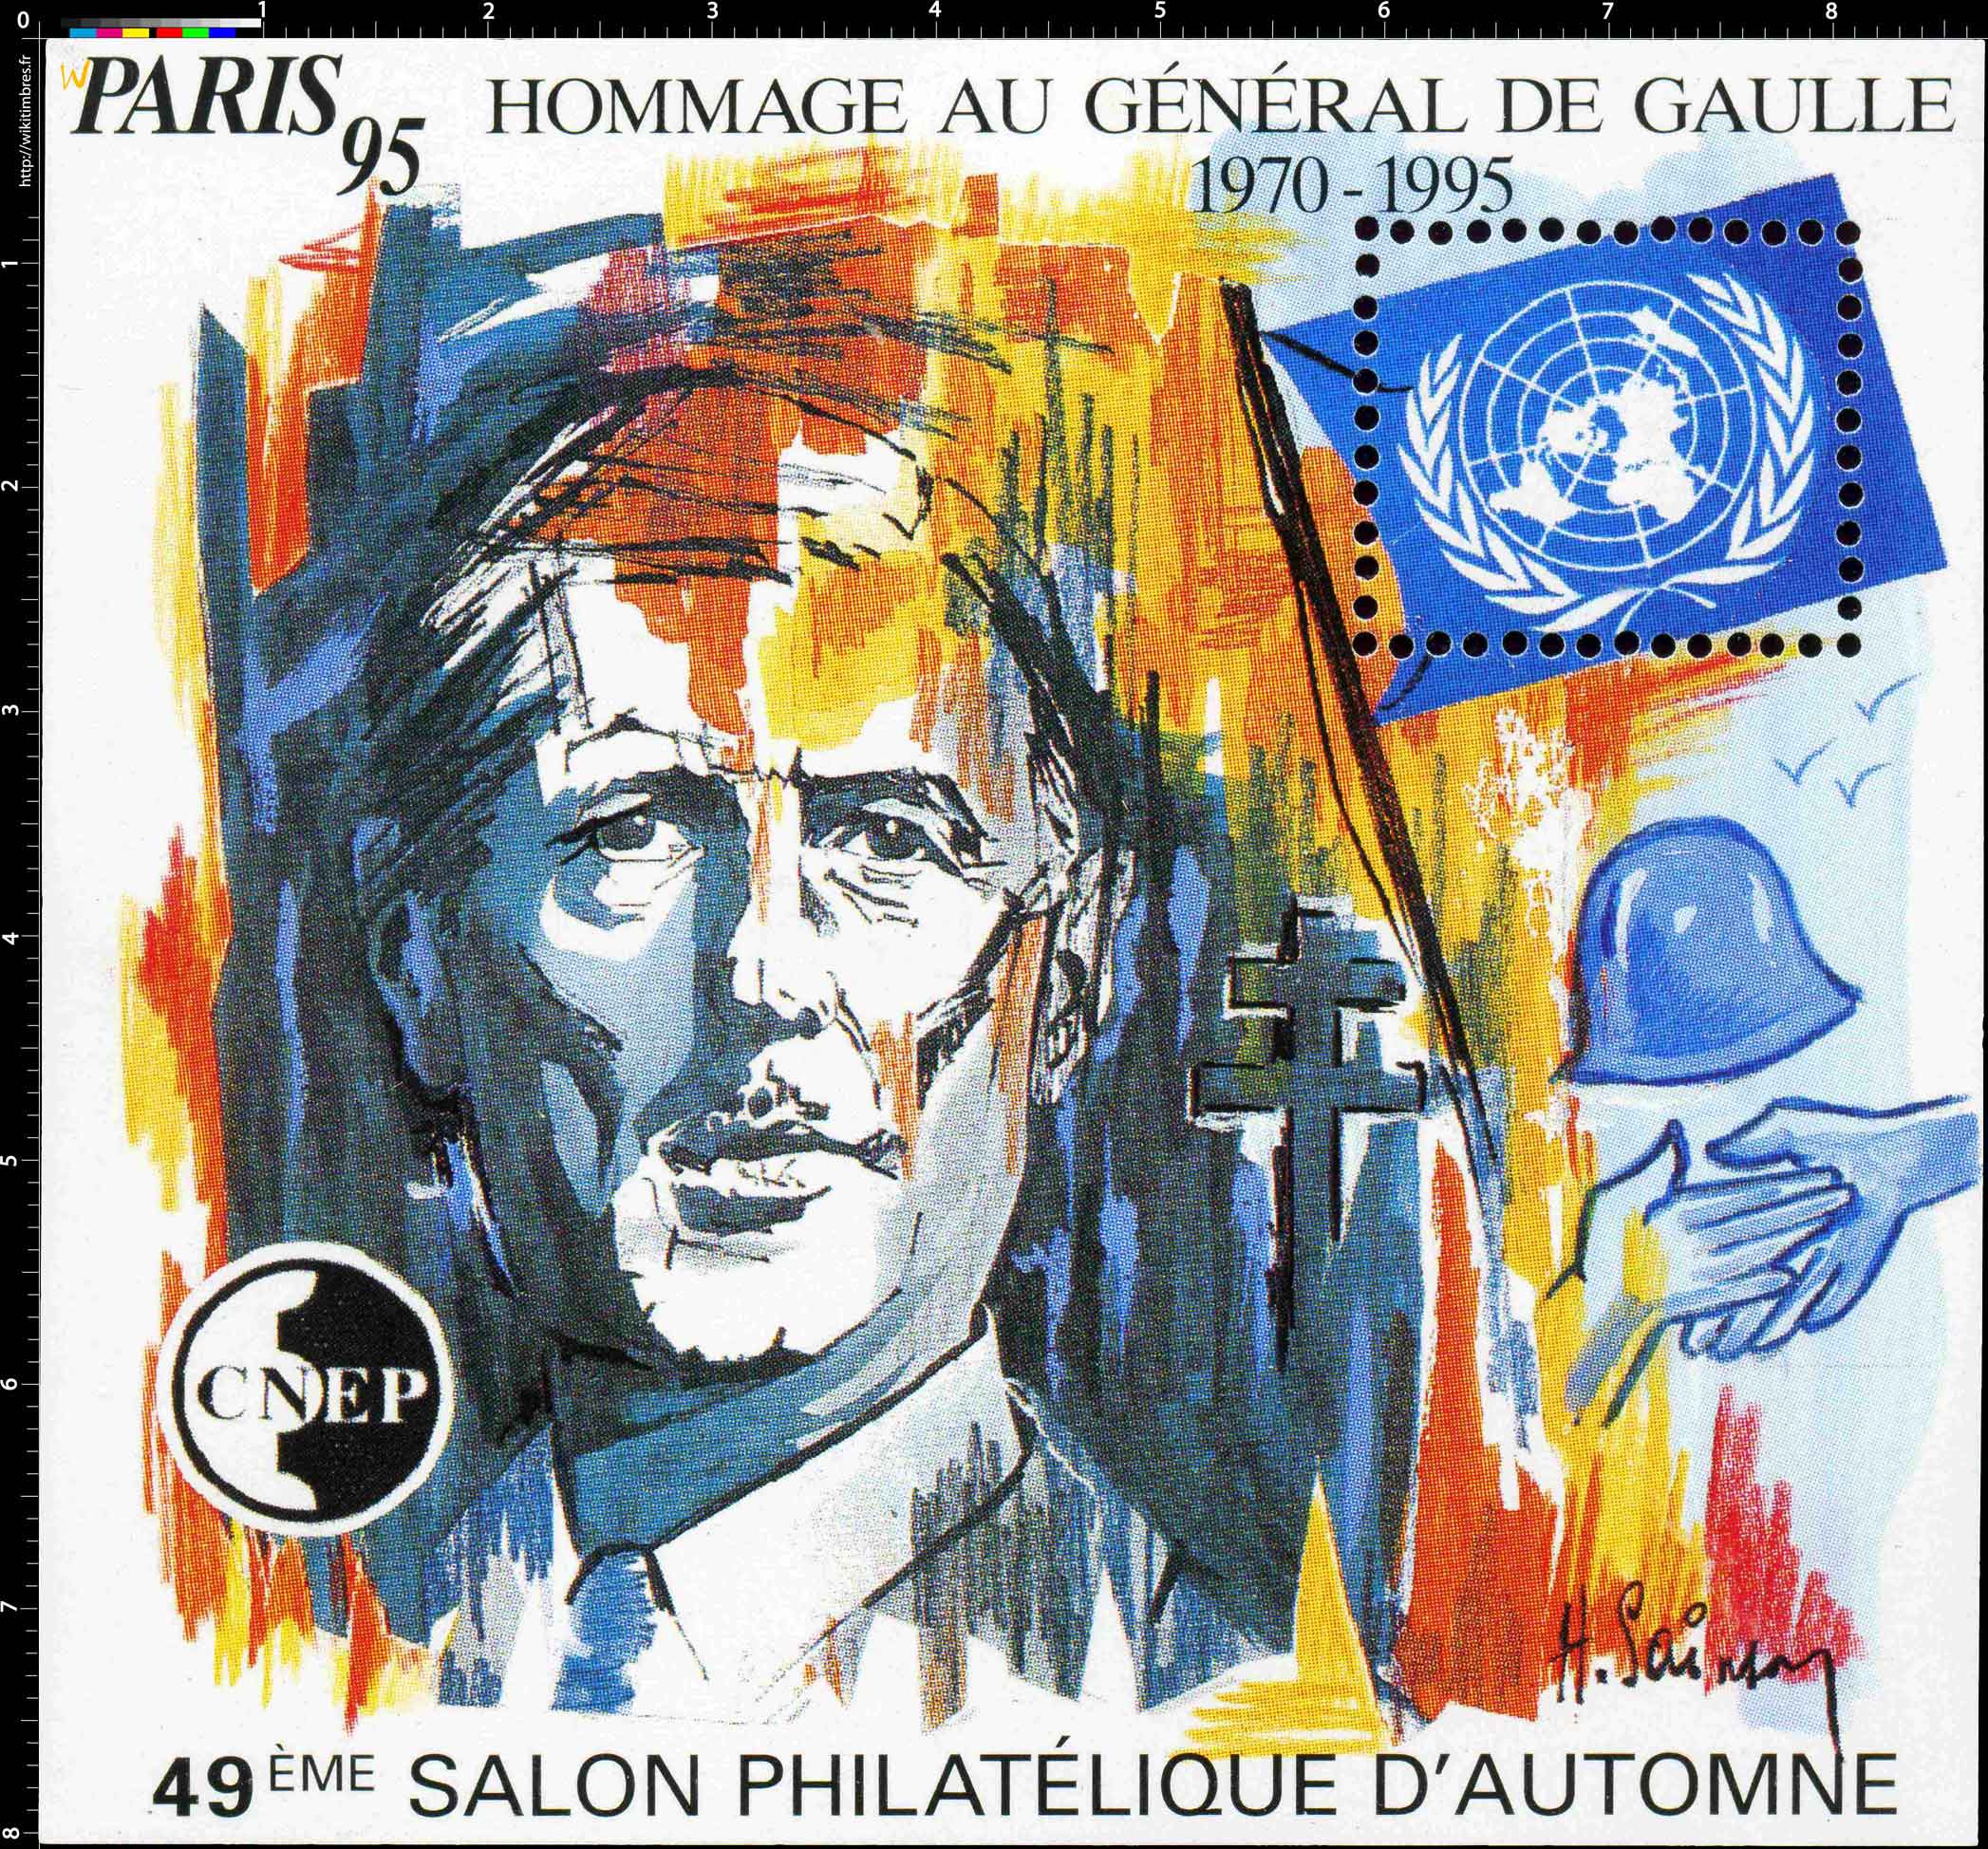 95 Hommage au général de Gaulle 1970 - 1995 49e Salon philatélique d'automne Paris CNEP